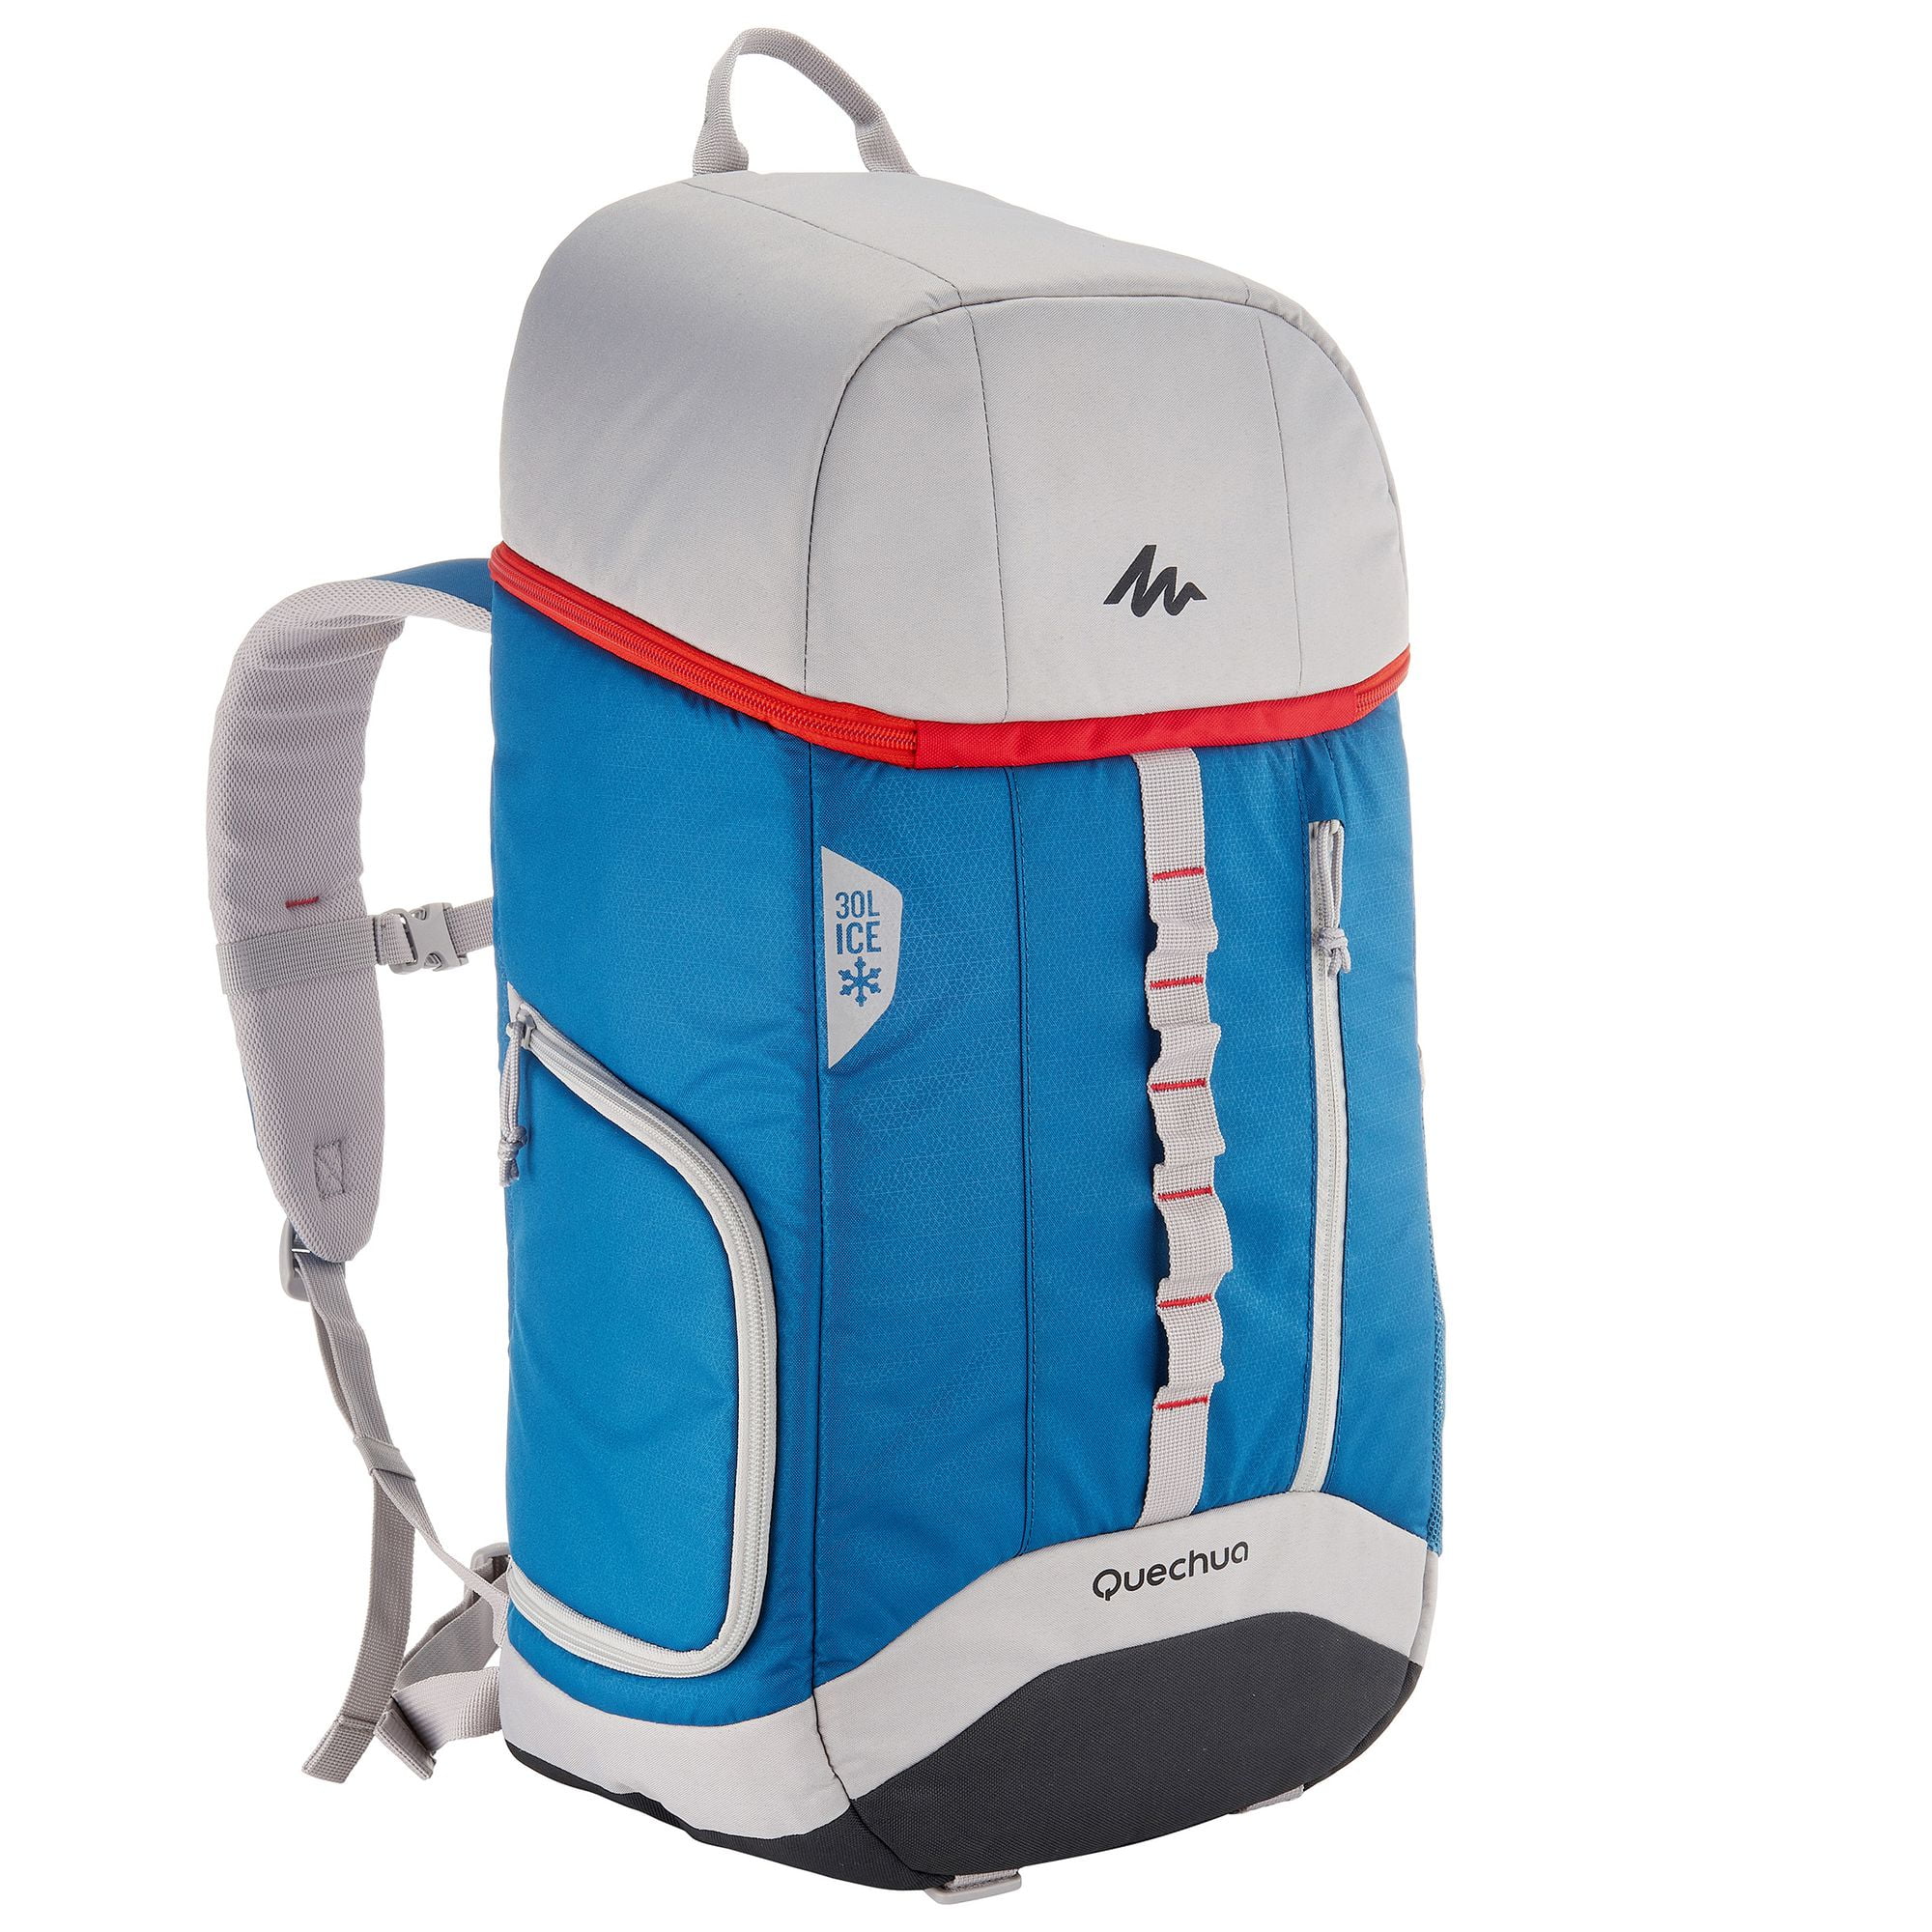 Decathlon Quechua, Hiking Cooler Backpack 30 L , Multi - Walmart.com